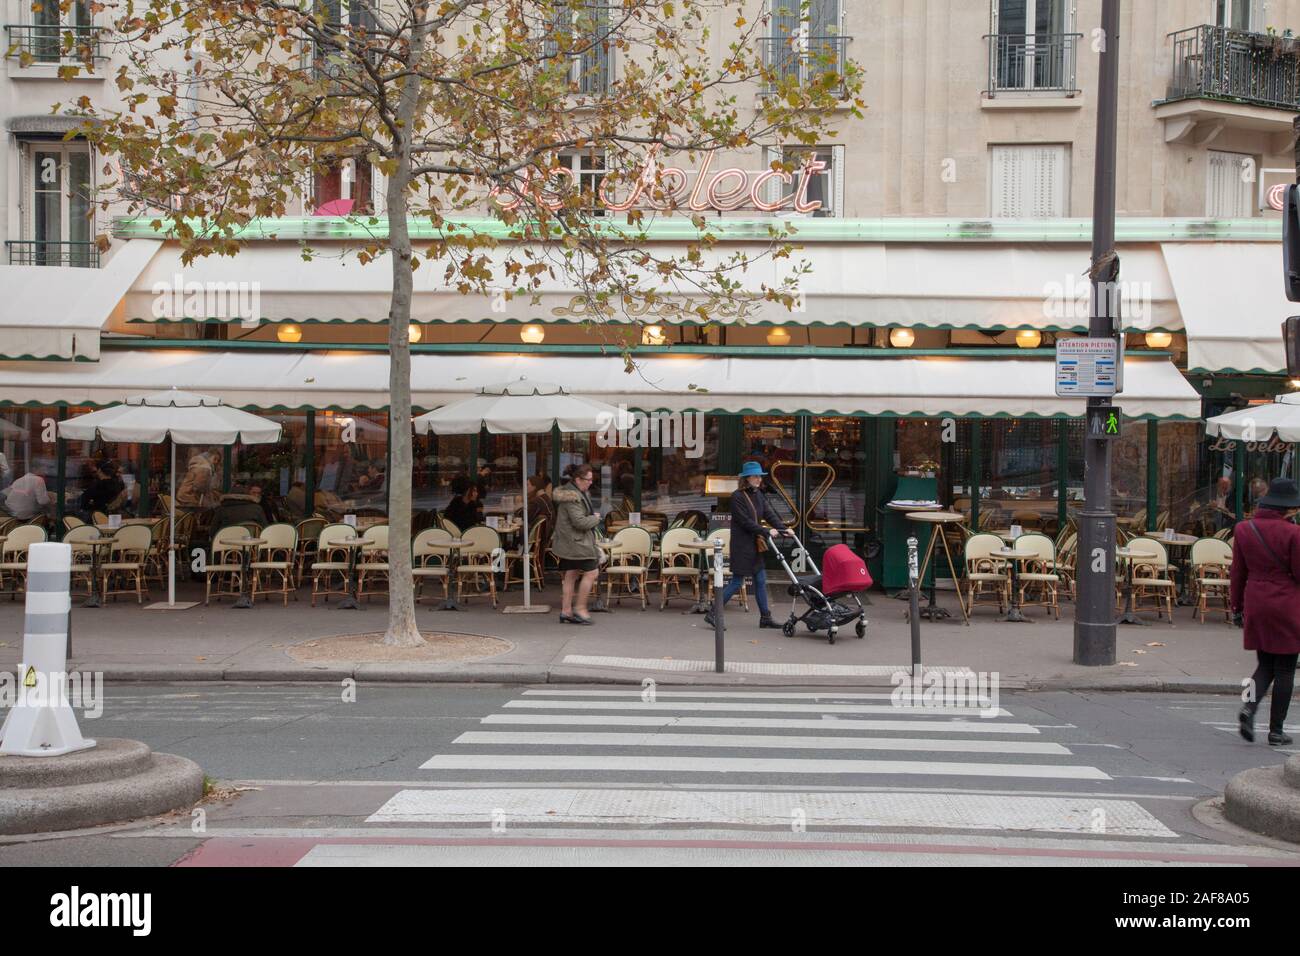 Le Select è una brasserie parigina fondata nel 1923 famoso come uno dei caffè di artisti e intellettuali tra cui Picasso ed Hemingway Foto Stock